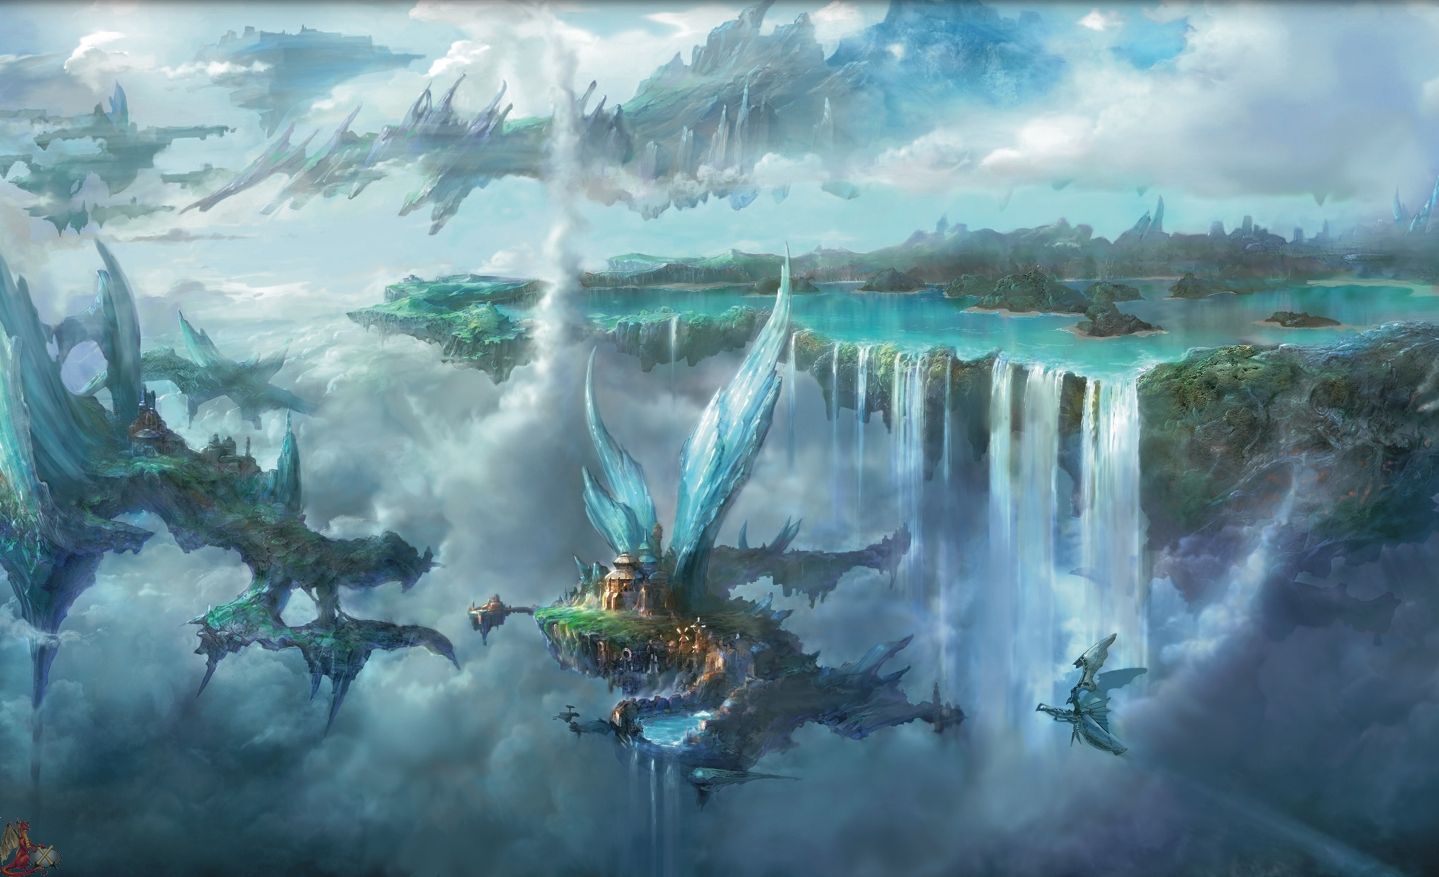 [50+] Final Fantasy Wallpaper HD 1080p on WallpaperSafari